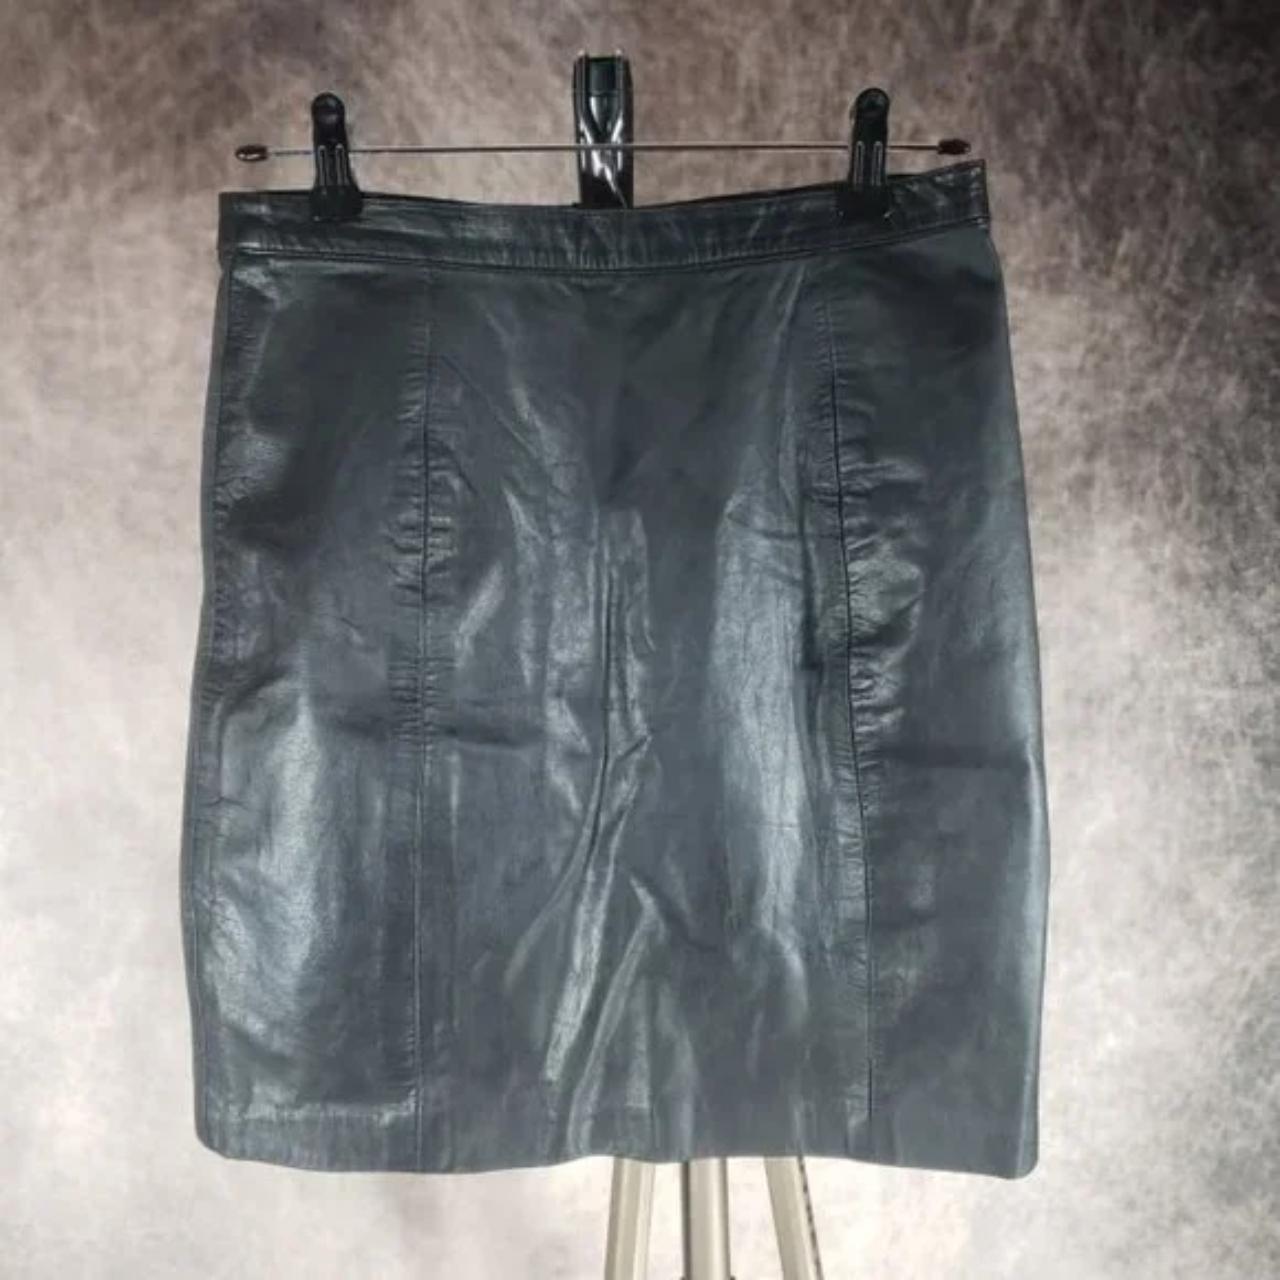 Vintage I.O.U. Leather vintage skirt with back... - Depop